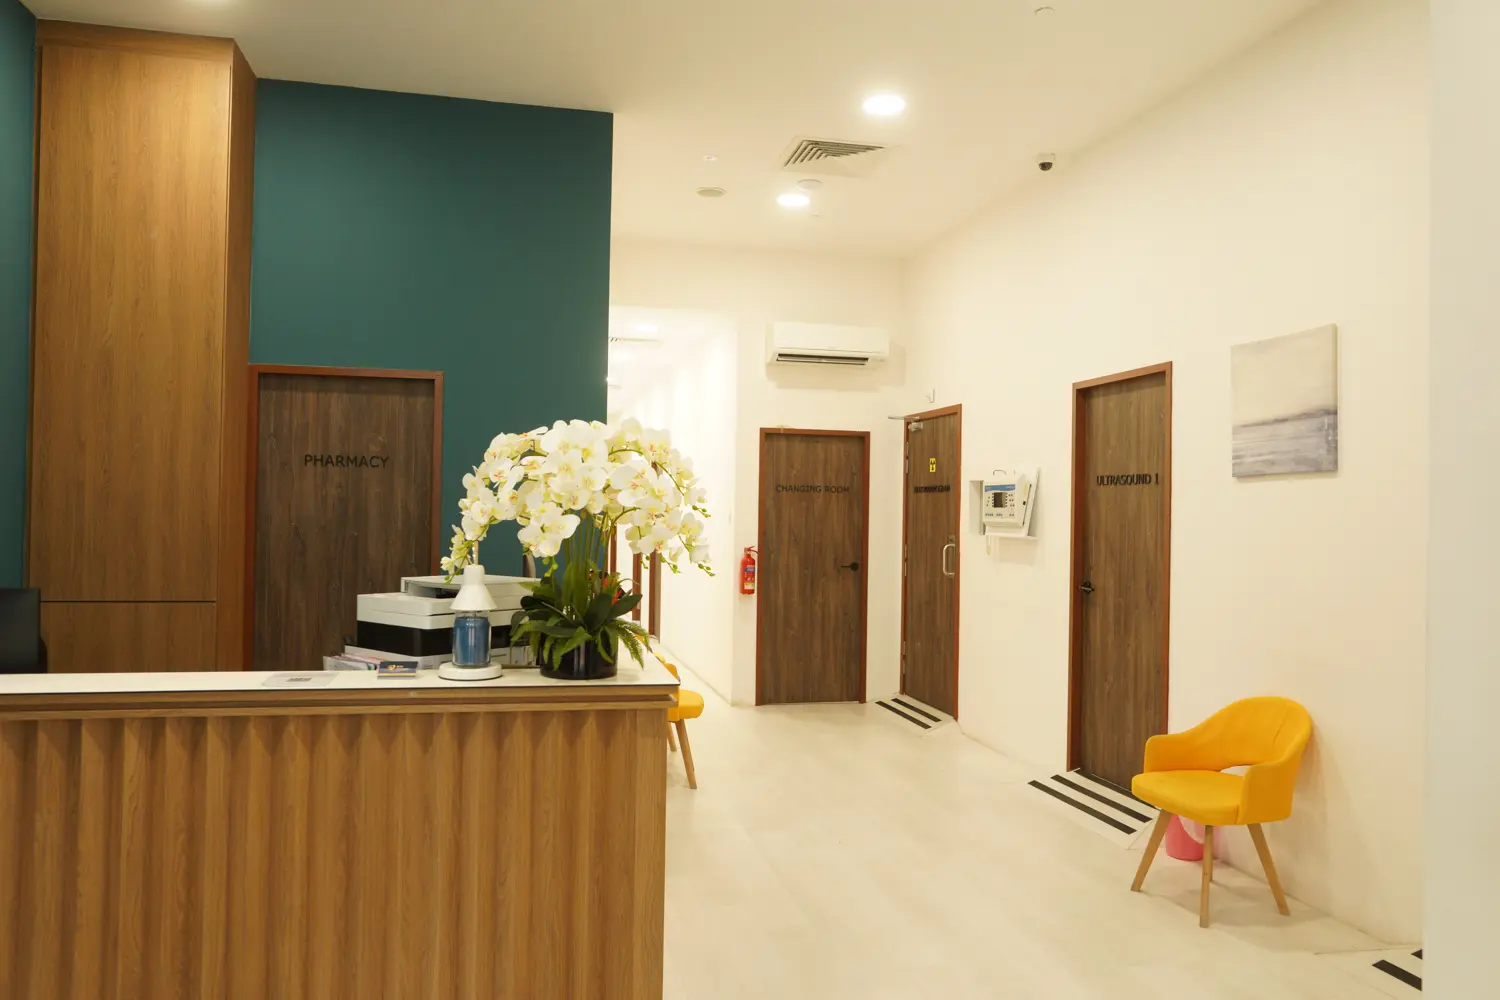 Reception and waiting area of ATA Medical Tanjong Pagar Clinic.